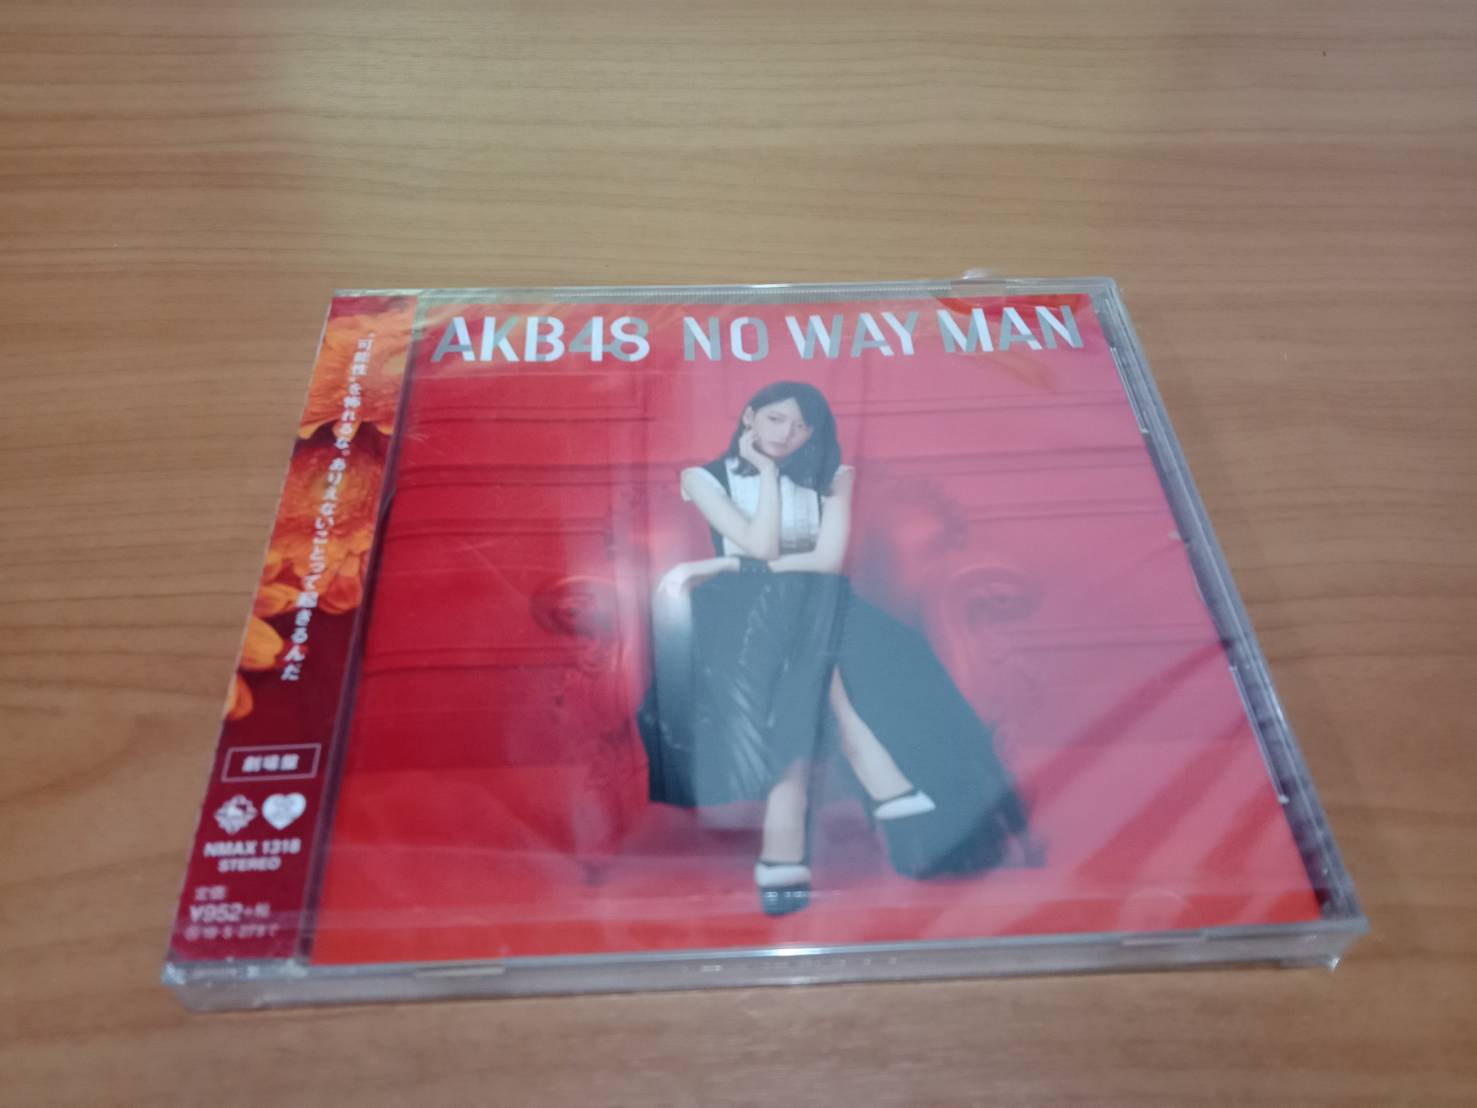 CD ซีดีเพลงญี่ปุ่น AKB 48 No Way Man